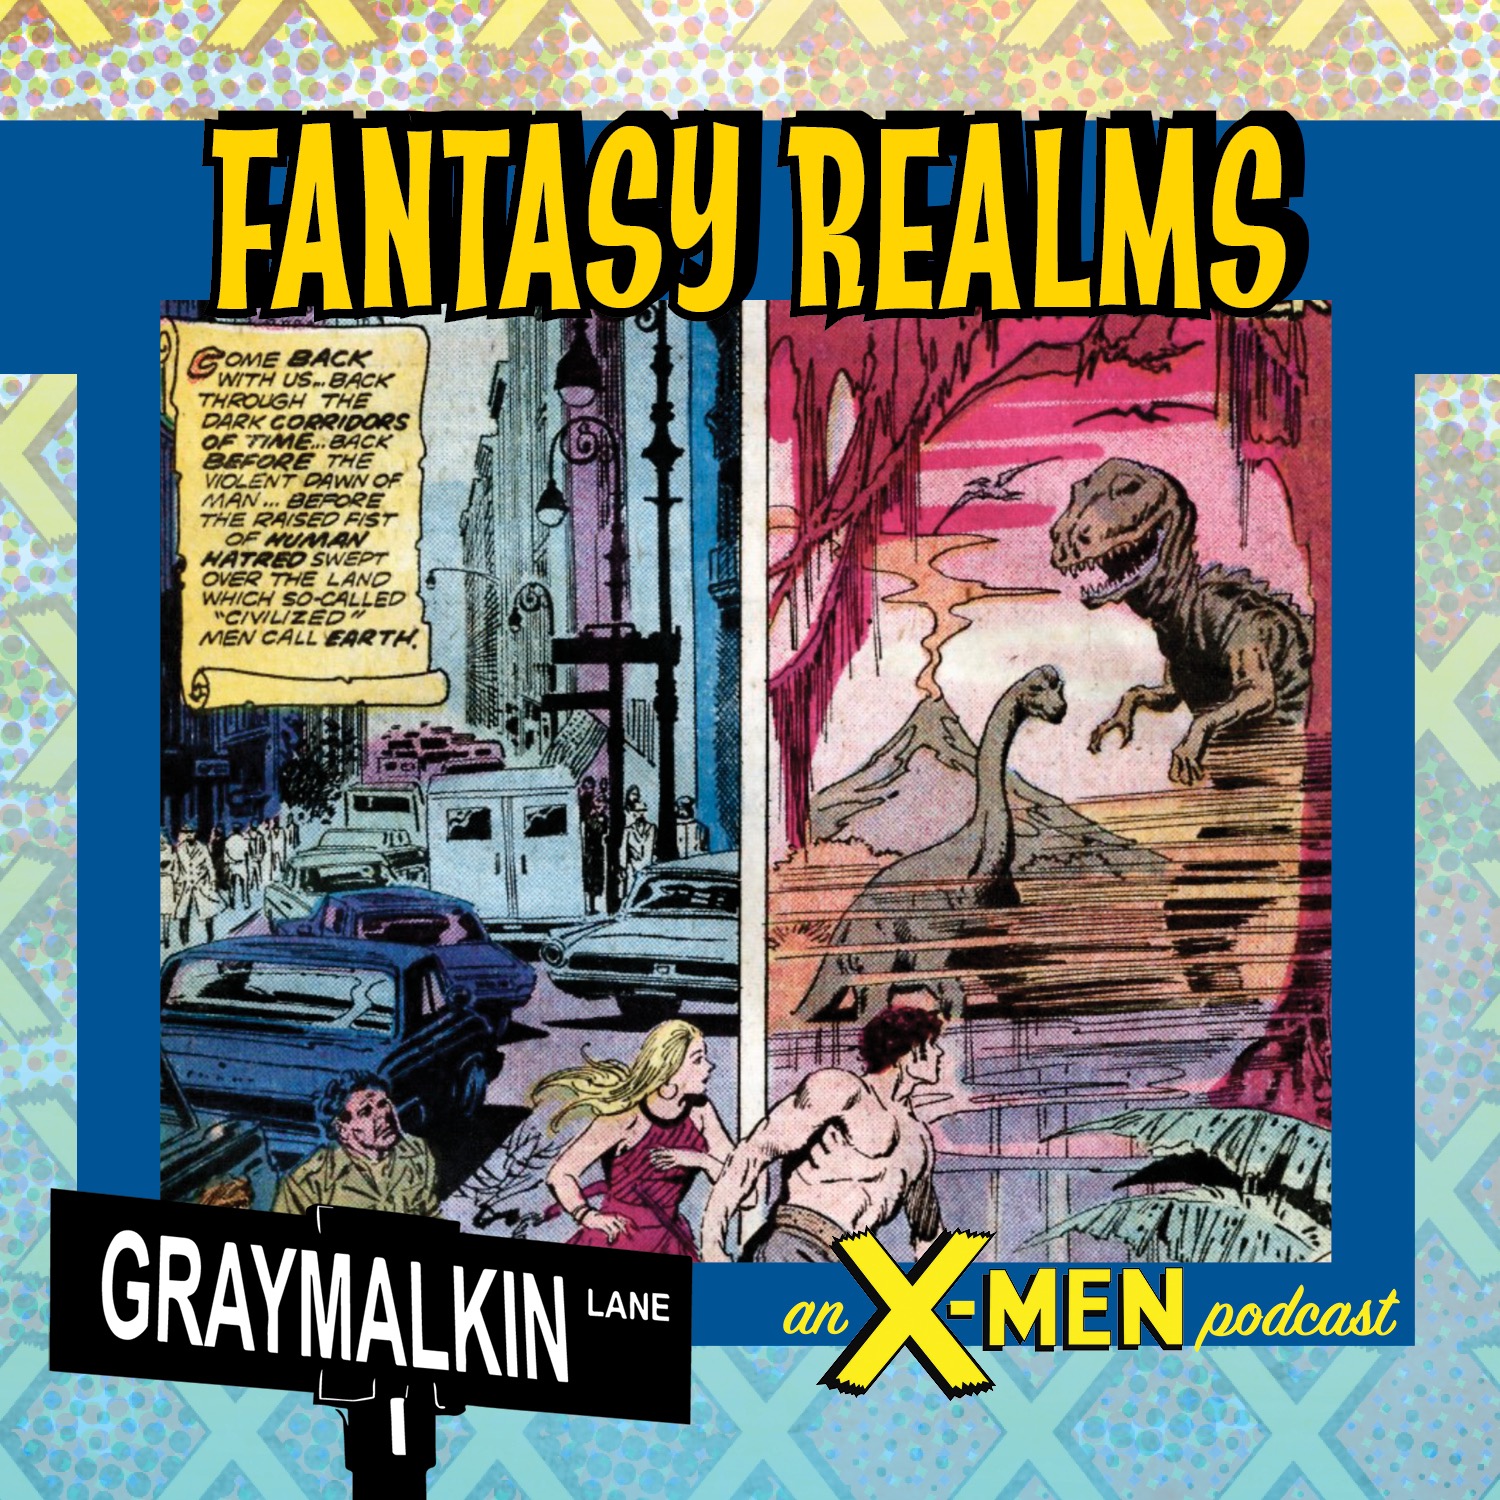 Marvel Realms of Fantasy! Featuring Derek Kunsken, Carrie Harris, Tristan Palmgren, Alex Segura, and Keith DeCandido!